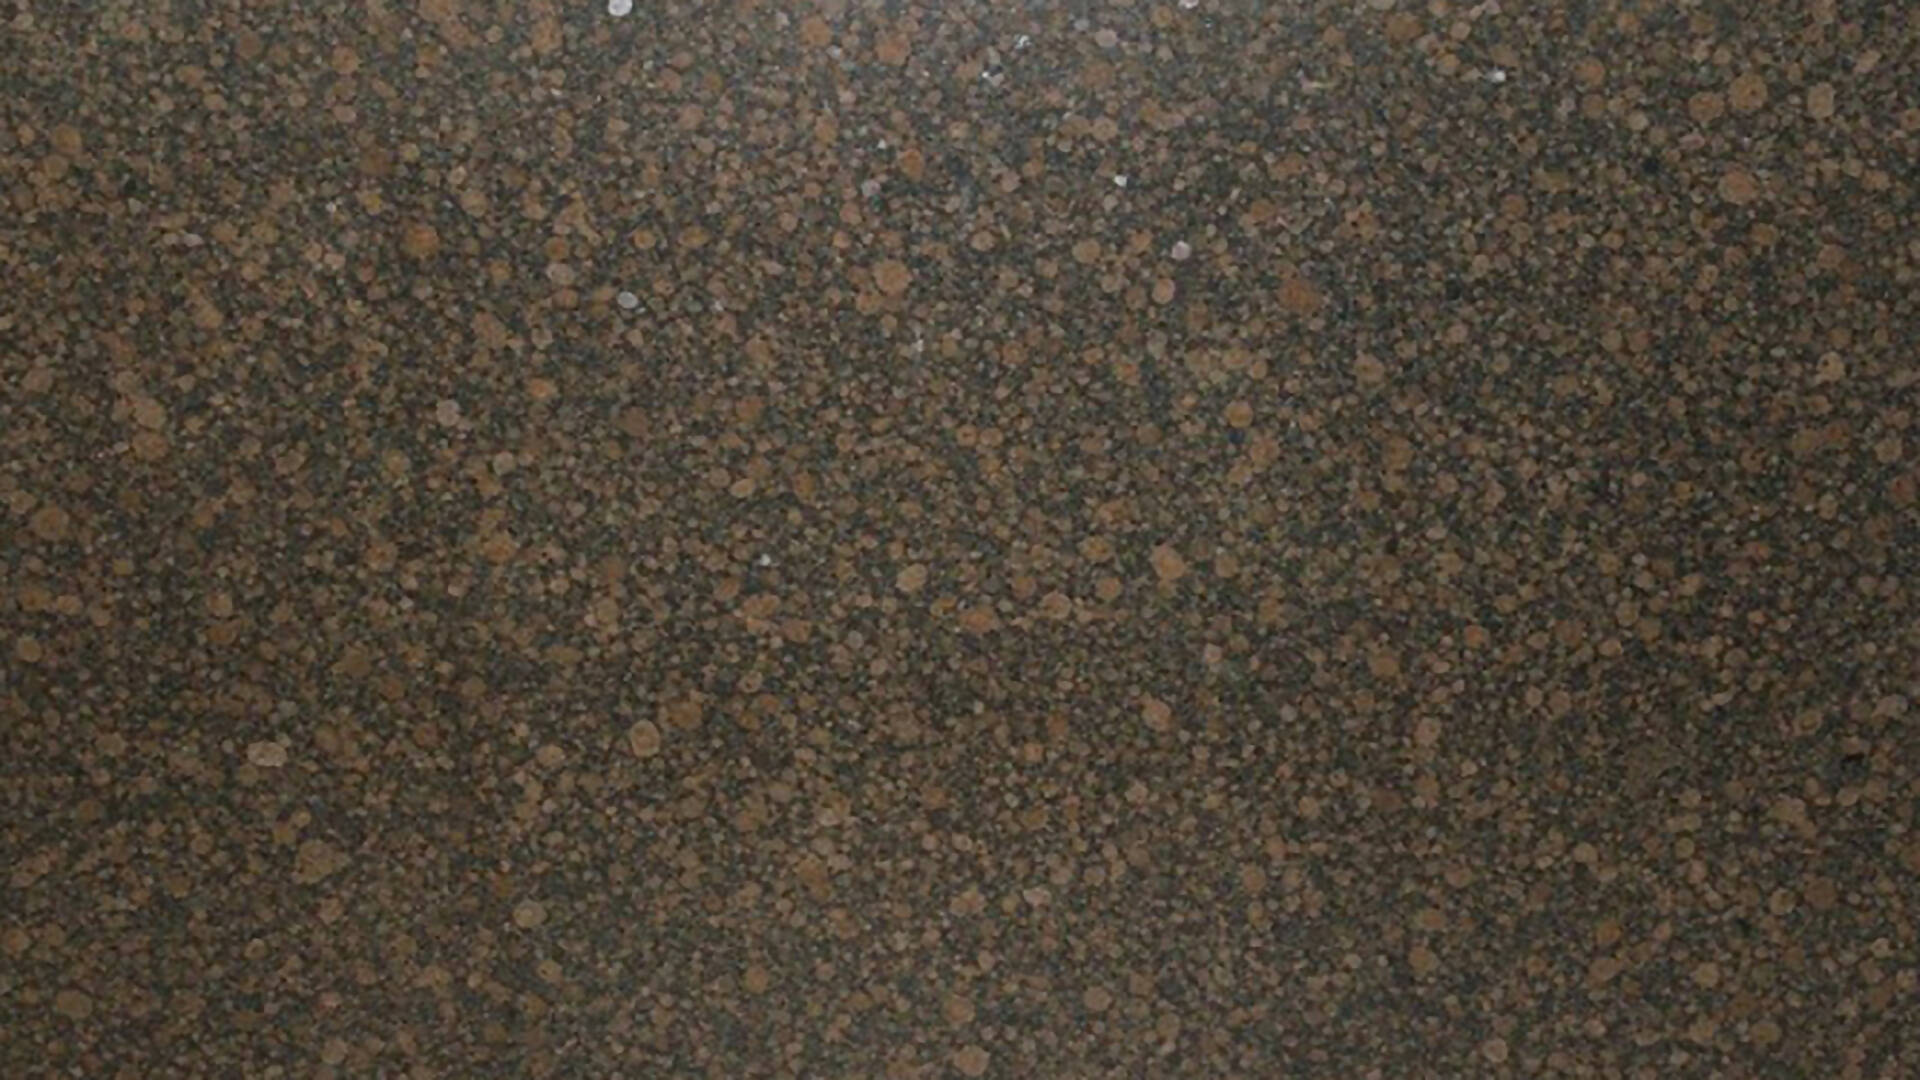 BALTIC BROWN GRANITE,Granite,KSG UK LTD,www.work-tops.com